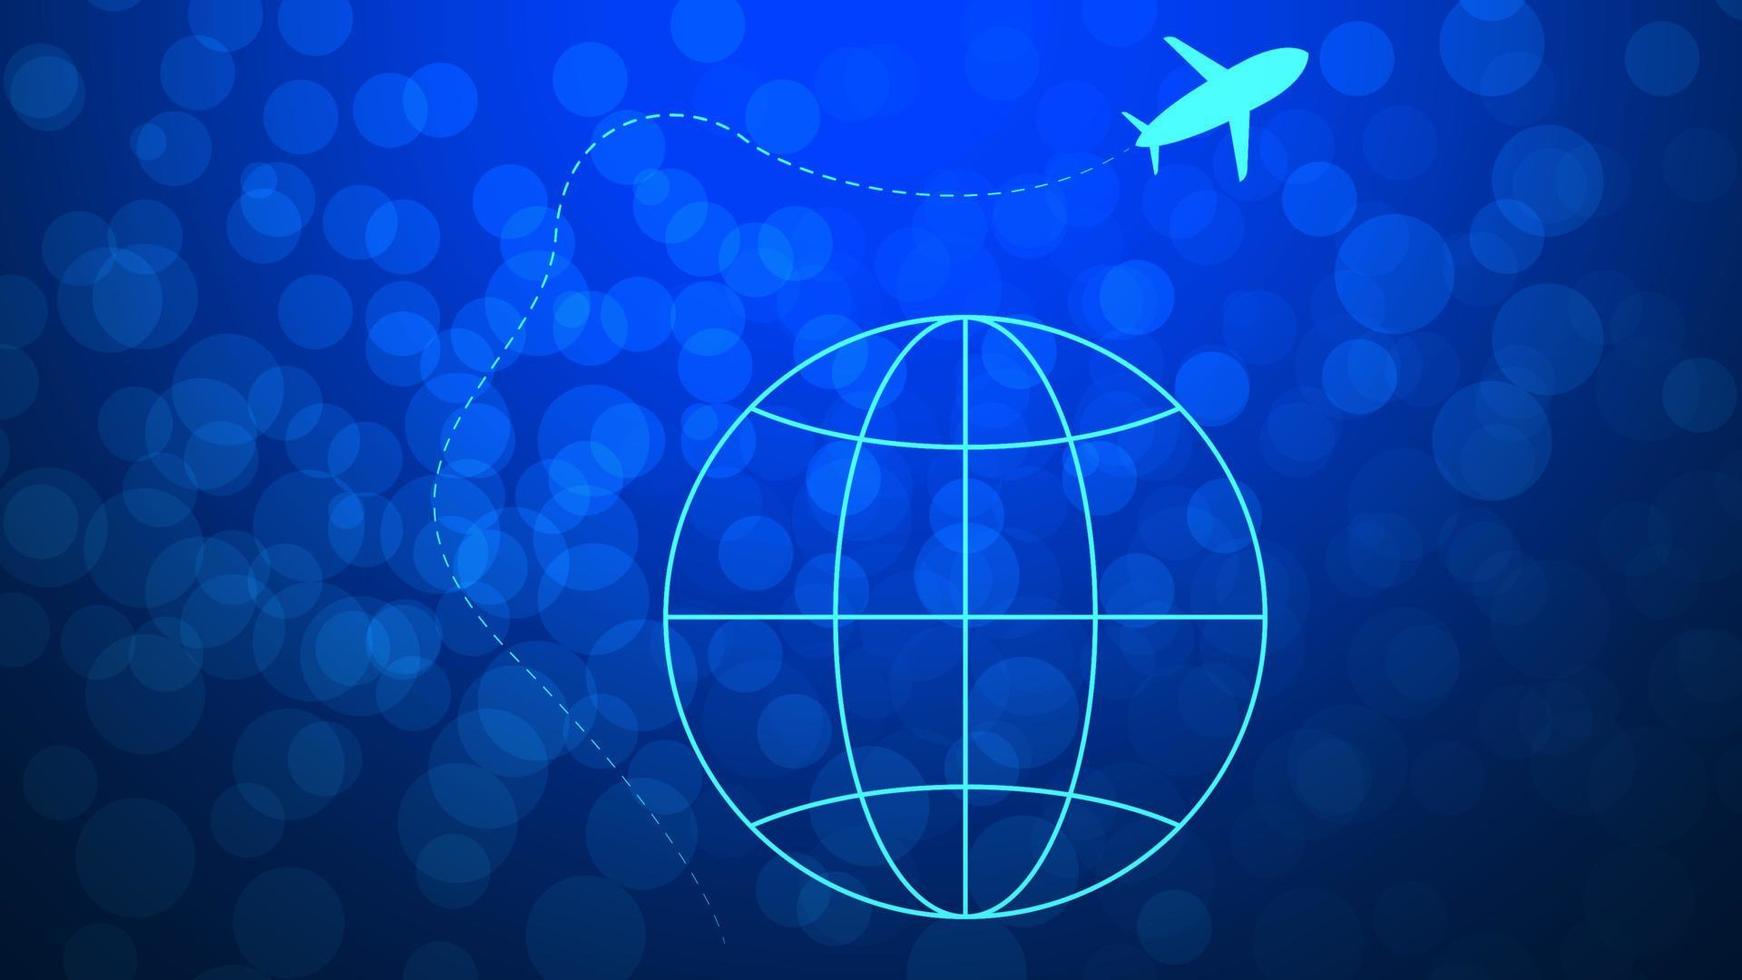 Reise Zeit, Reise Versicherung oder Reise Agentur Hintergrund mit Globus und Flugzeug Symbol. Vektor Illustration.